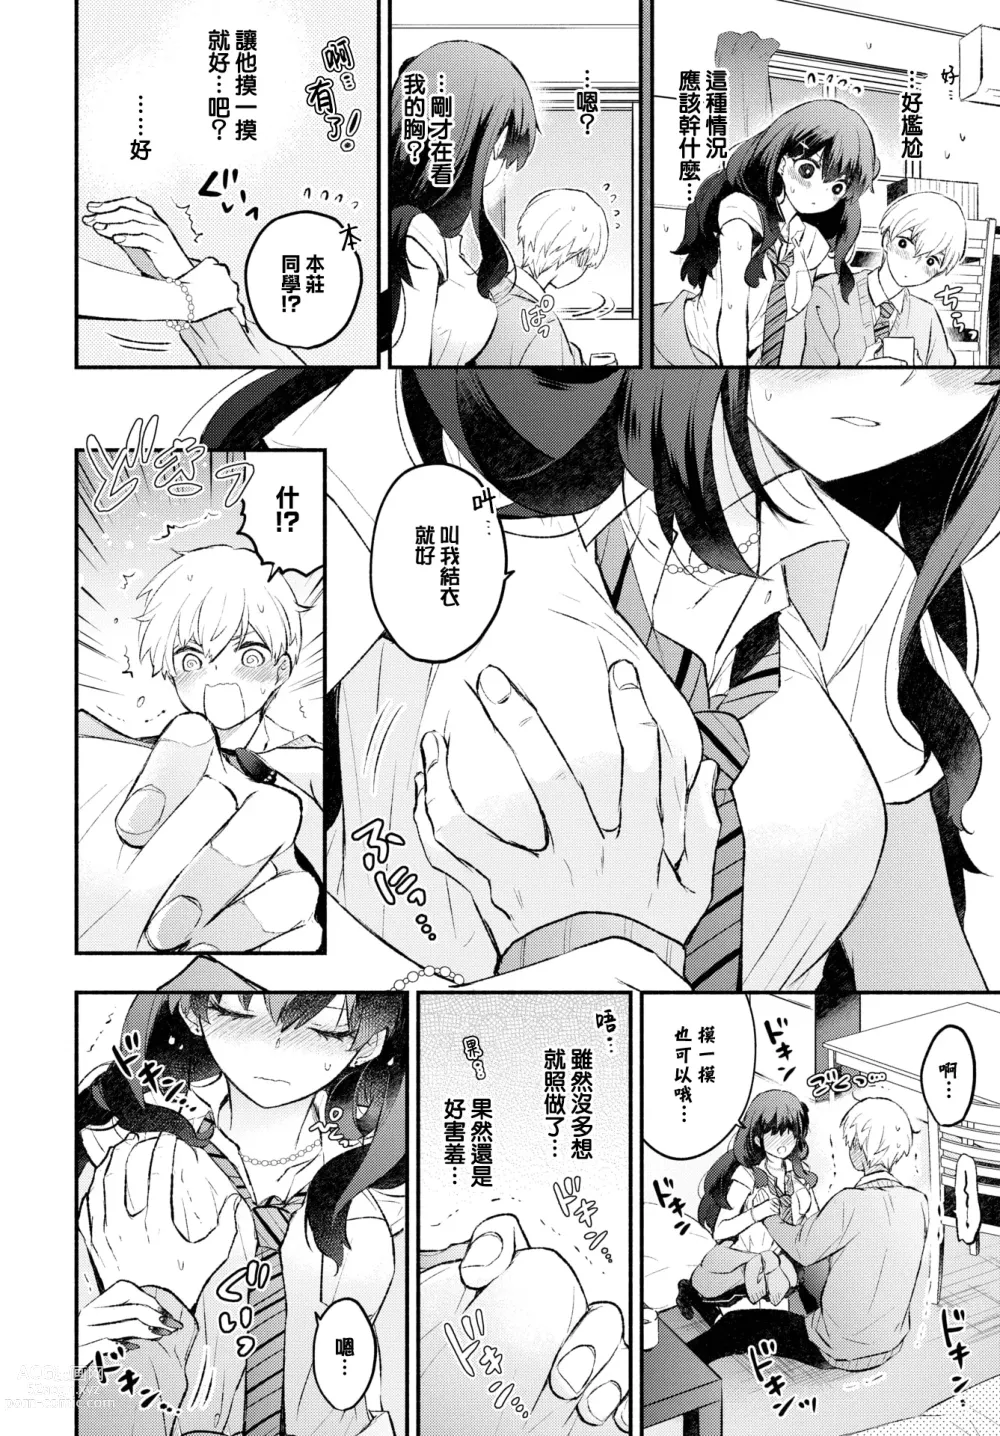 Page 5 of manga Usotsuki Kanojo